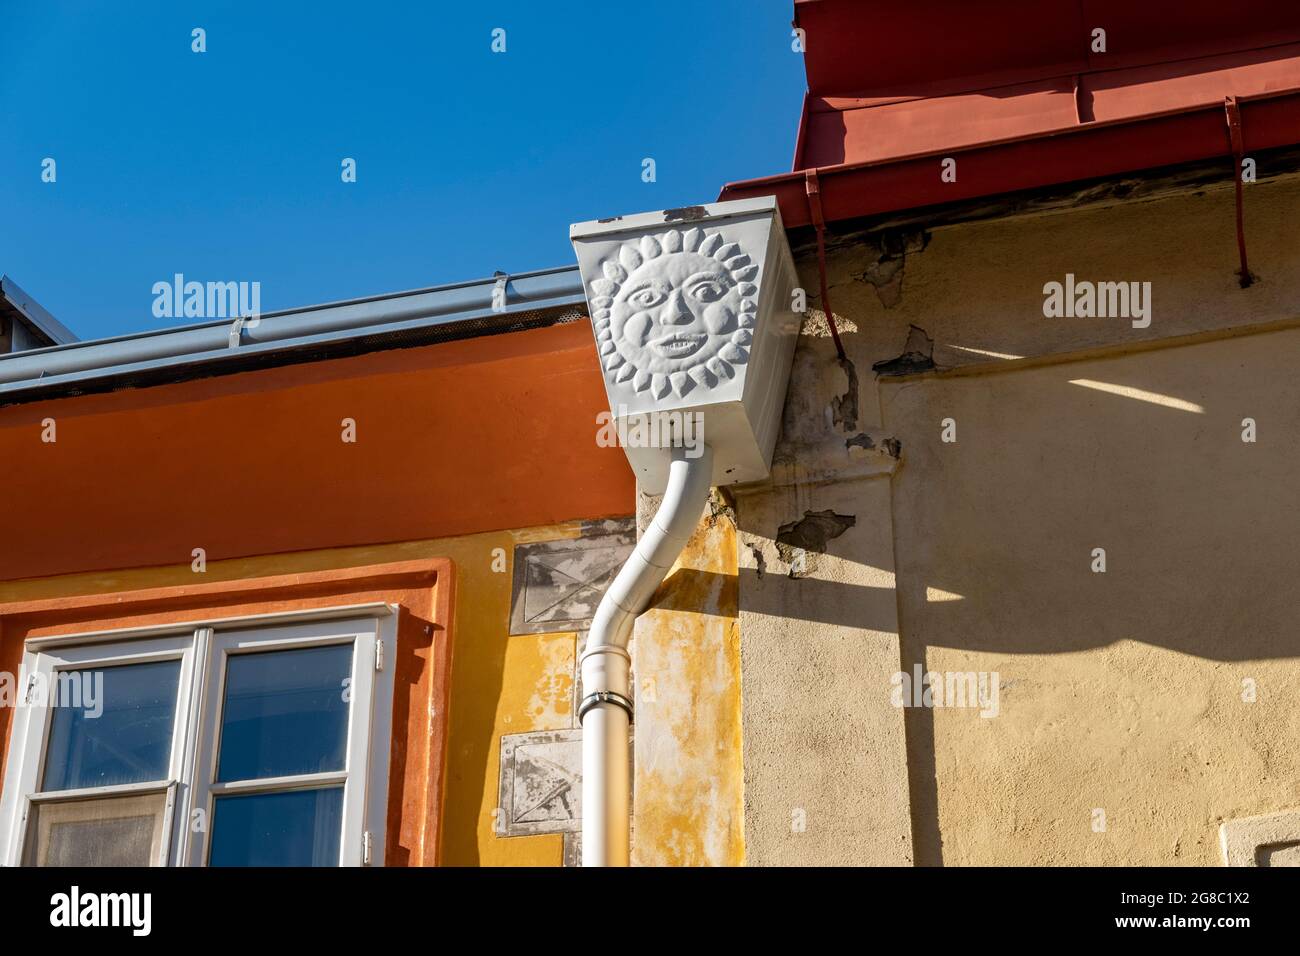 Soleil stylisé - relief décoratif d'une gouttière d'époque sur la façade d'une vieille maison, Kolin, République tchèque, Europe Banque D'Images